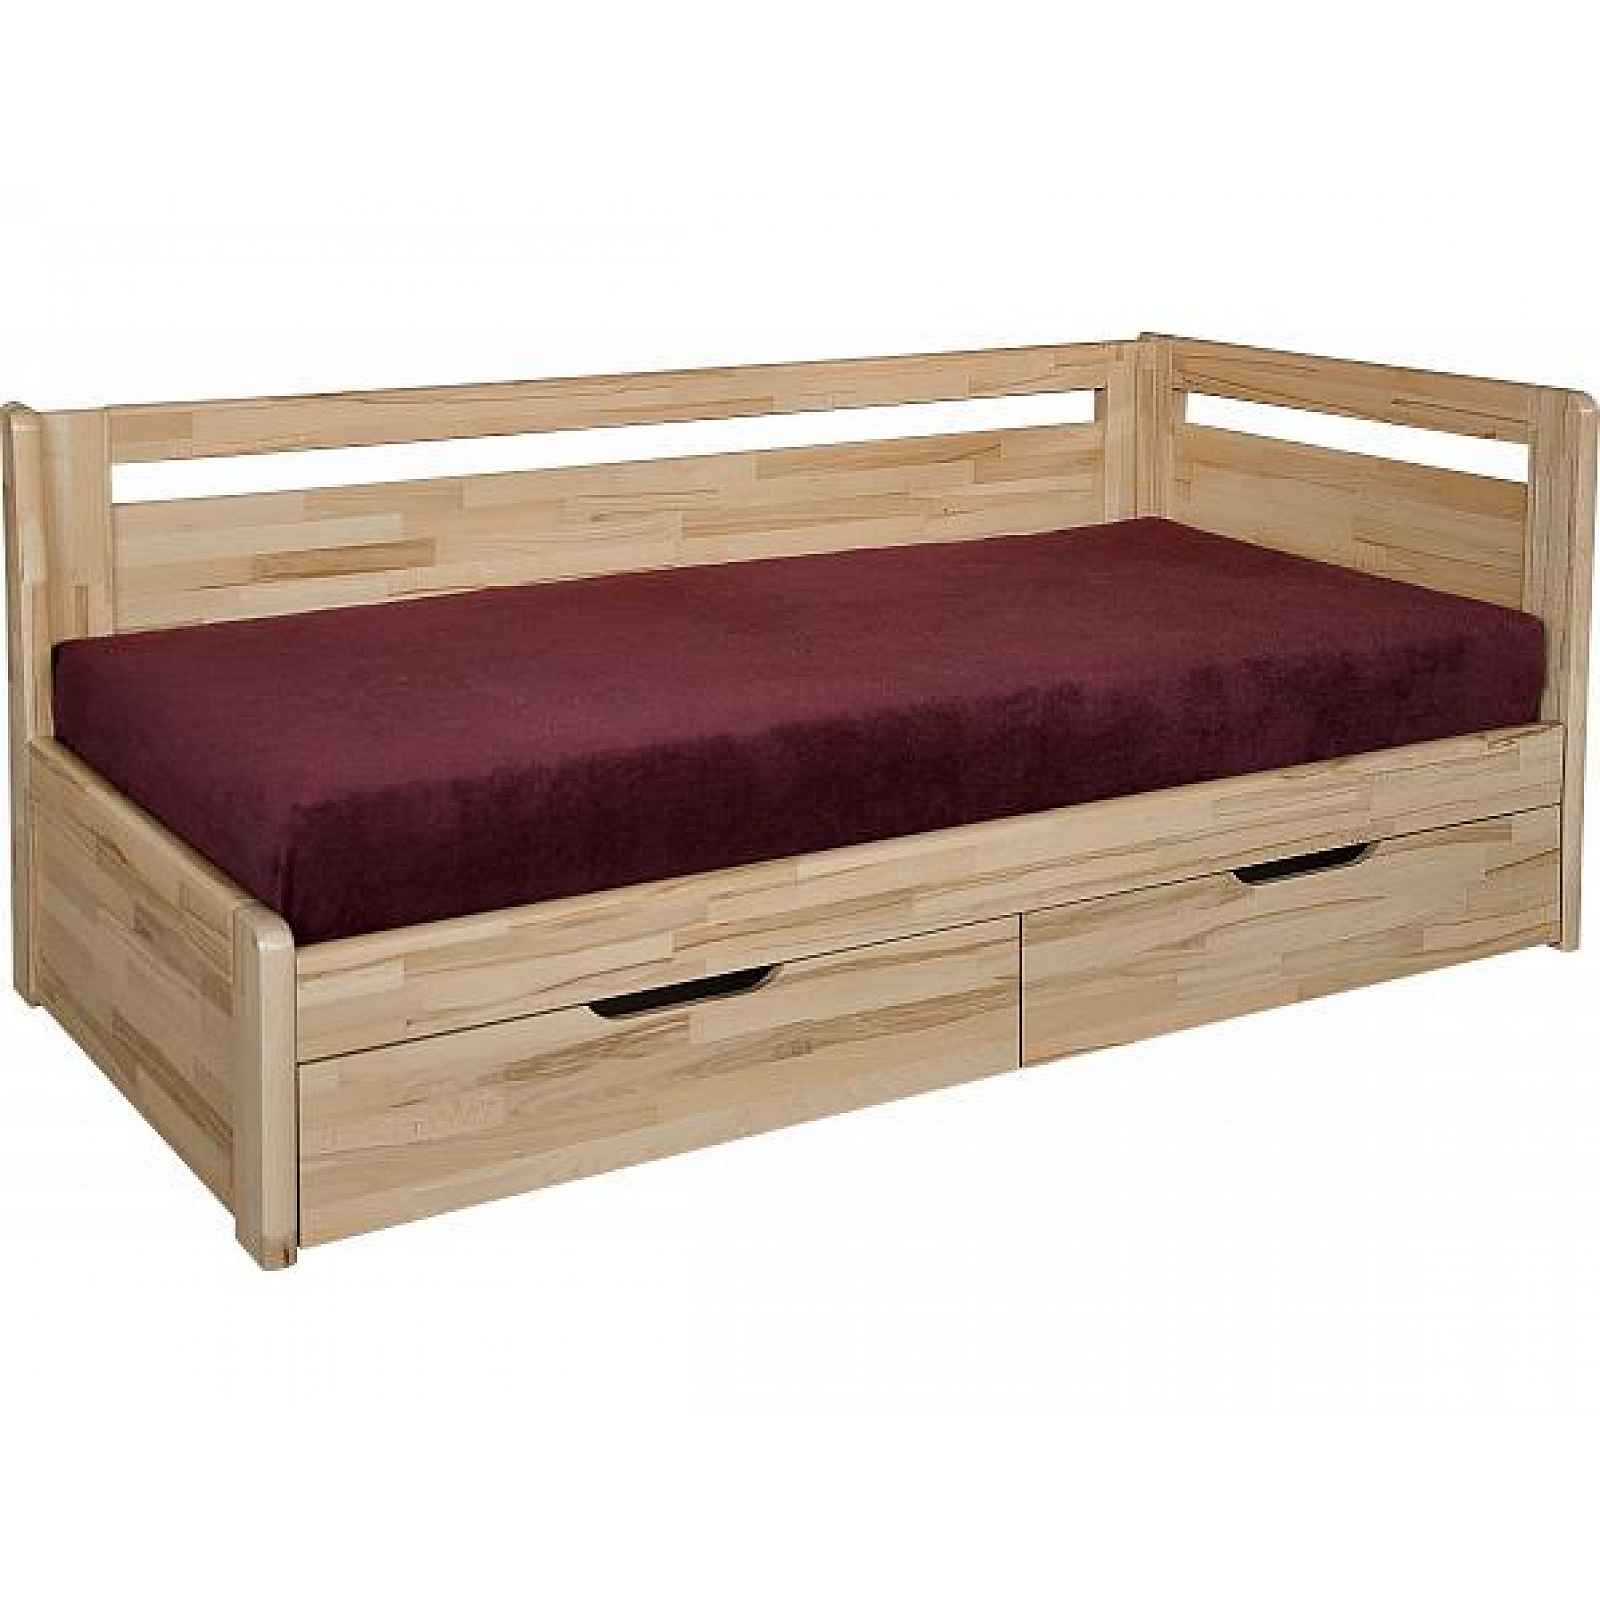 Masivní rozkládací postel Kombi, s roštem a matrací olejovosk, 90x200 cm, buk, bez bočních čel, bez opěrek, EcoStretch